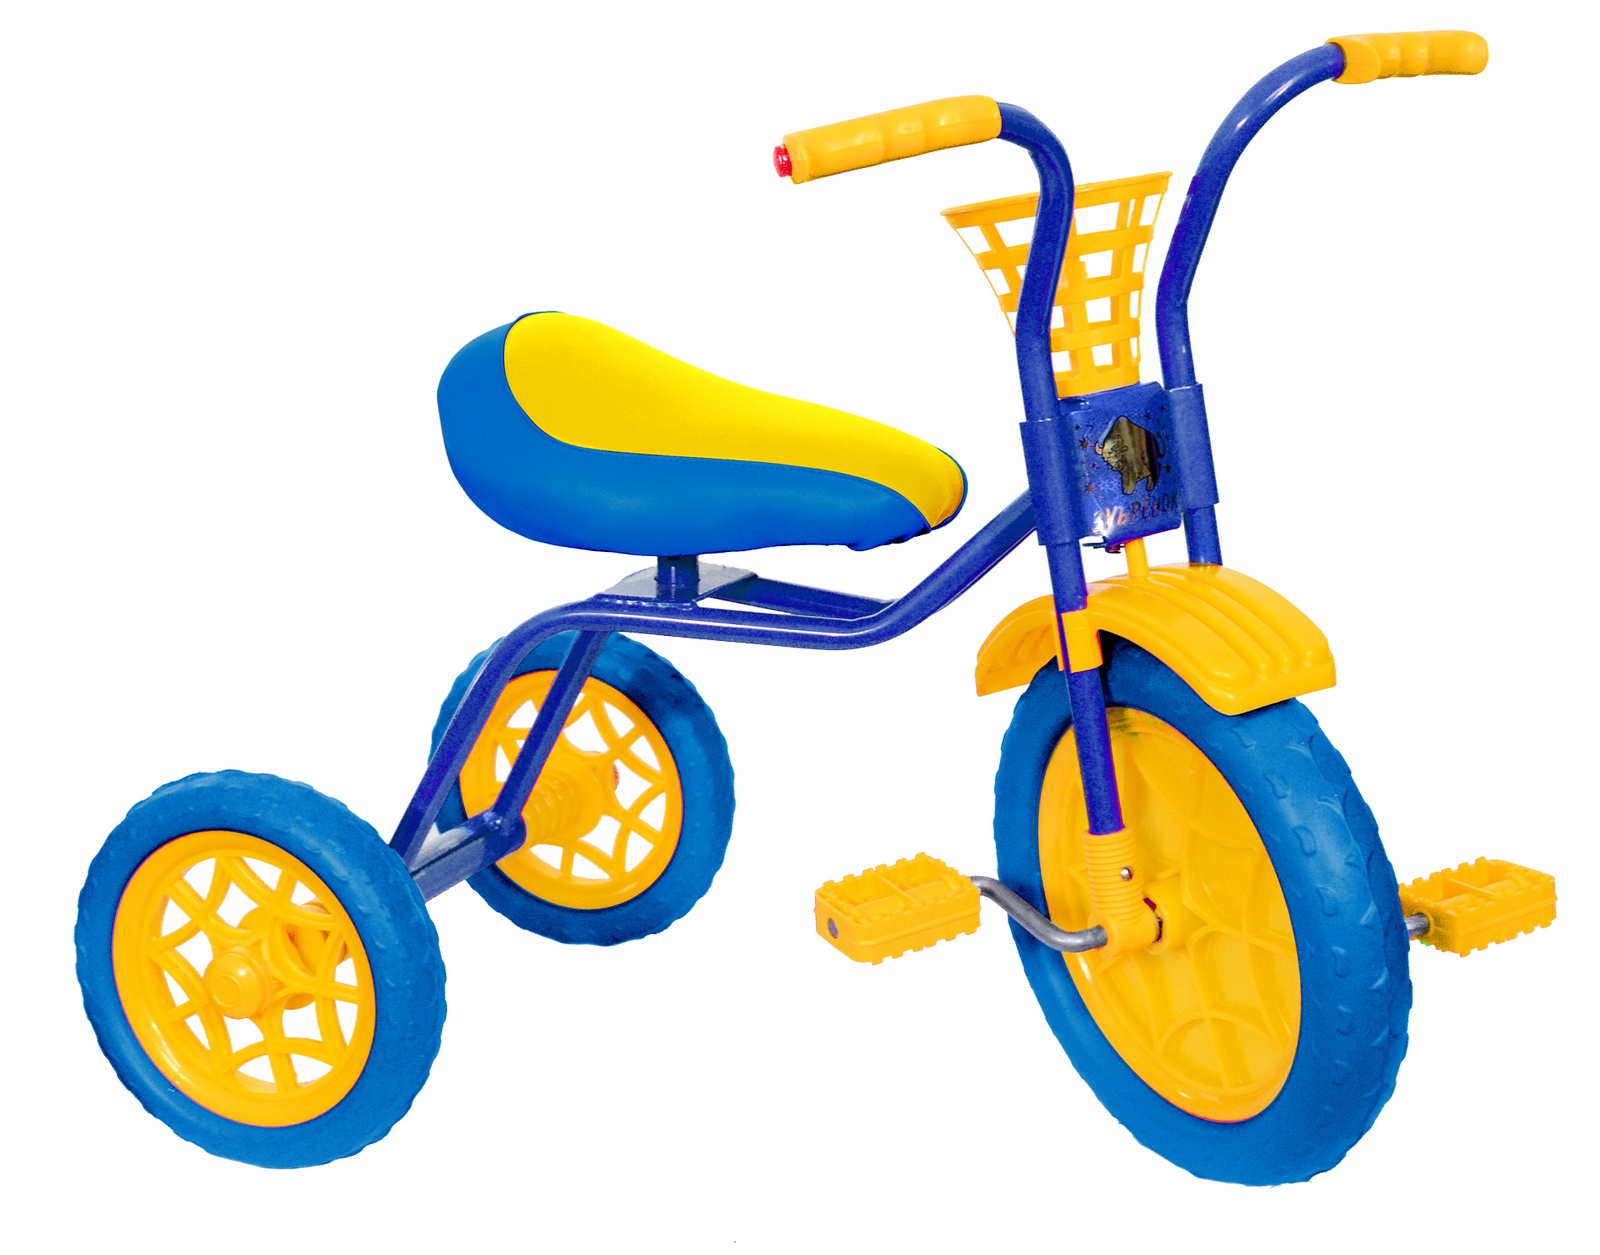 Детские трехколесные велосипеды от 2 лет. Велосипед Зубренок 3-х колесный. Велосипед 3-х колесный Зубренок 526-611. Трехколесный велосипед Winther 405.26. Трехколесный велосипед dolu DL_7139.